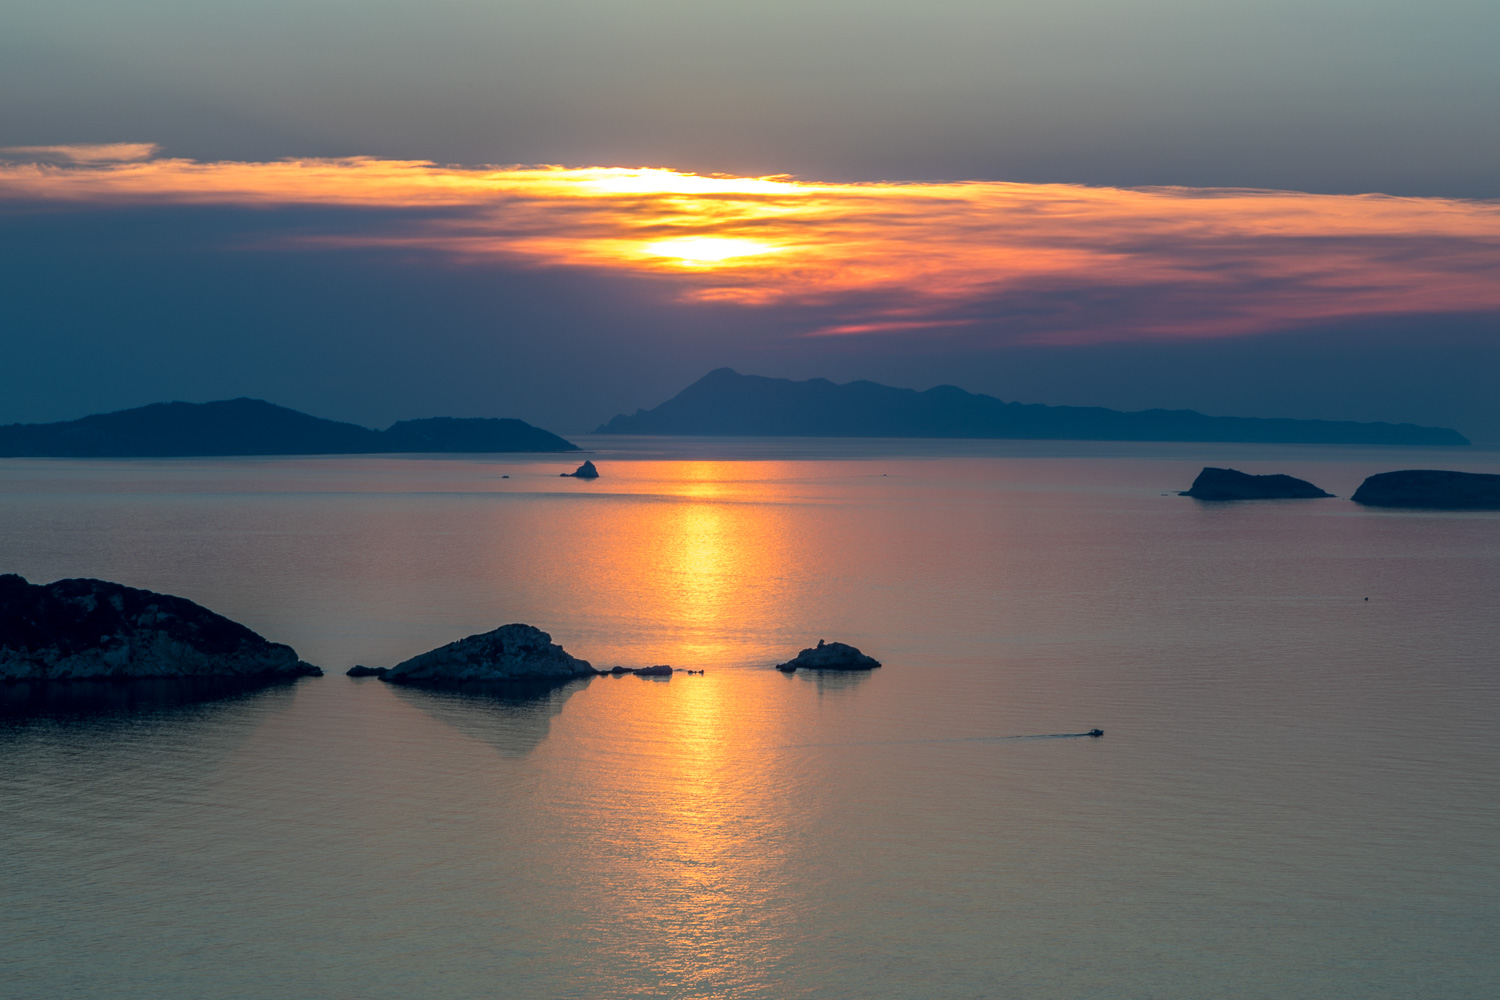 Corfu sunset